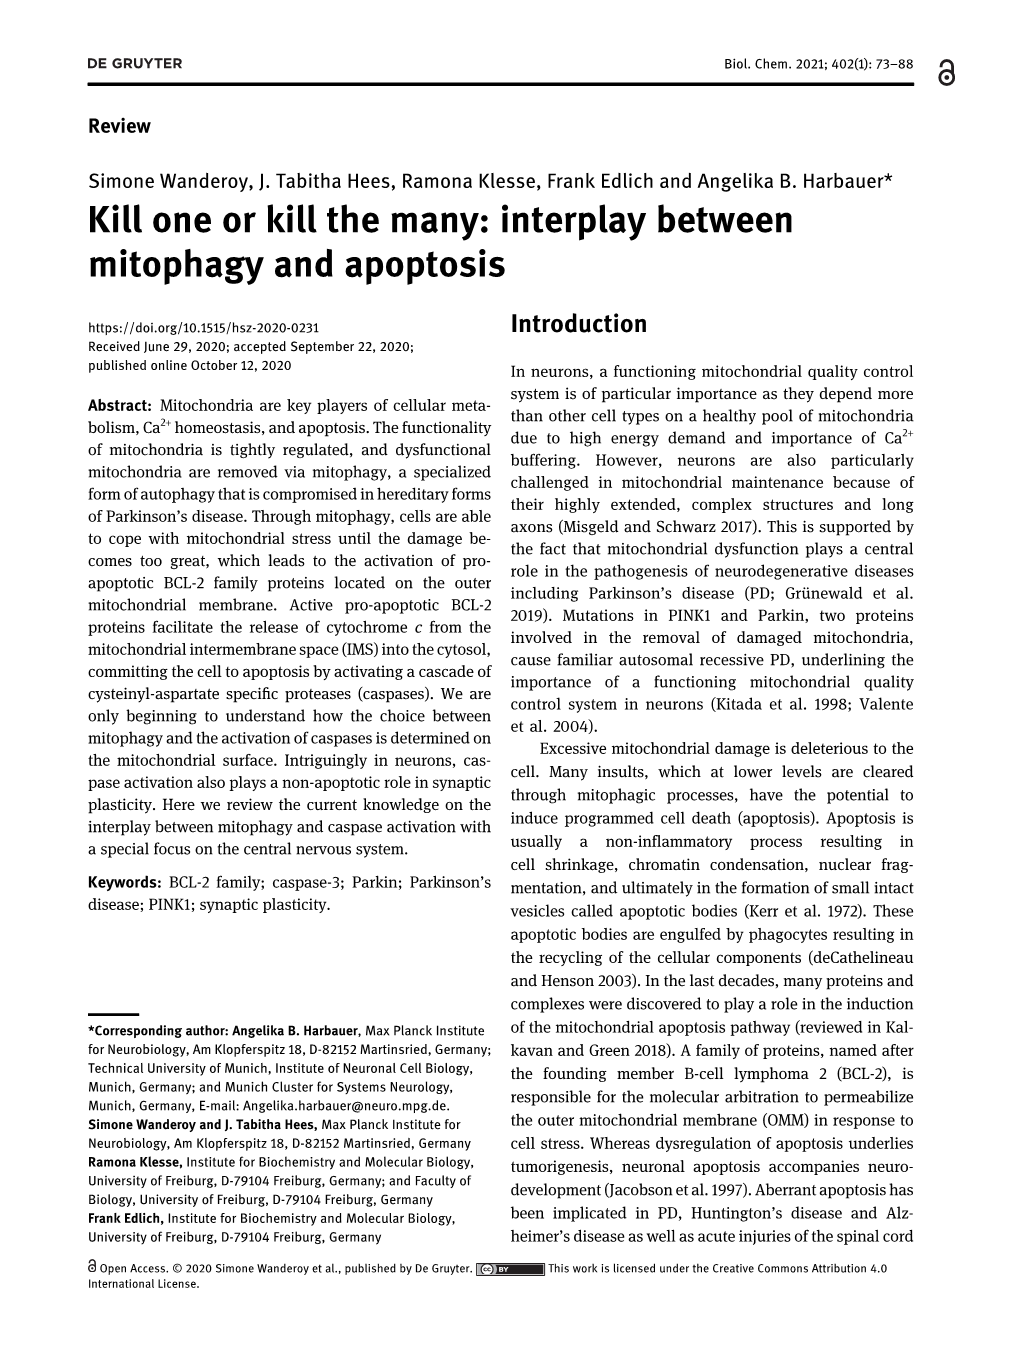 Kill One Or Kill the Many: Interplay Between Mitophagy and Apoptosis